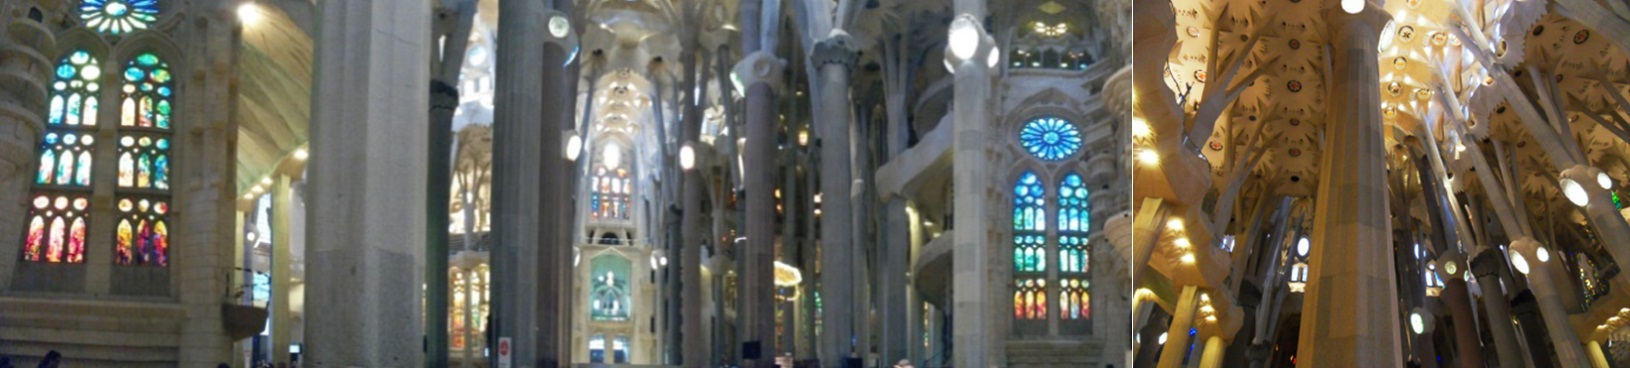 Die Sagrada Familia ist Spaniens Kölner Dom und BER in einem: ewig unfertig. 